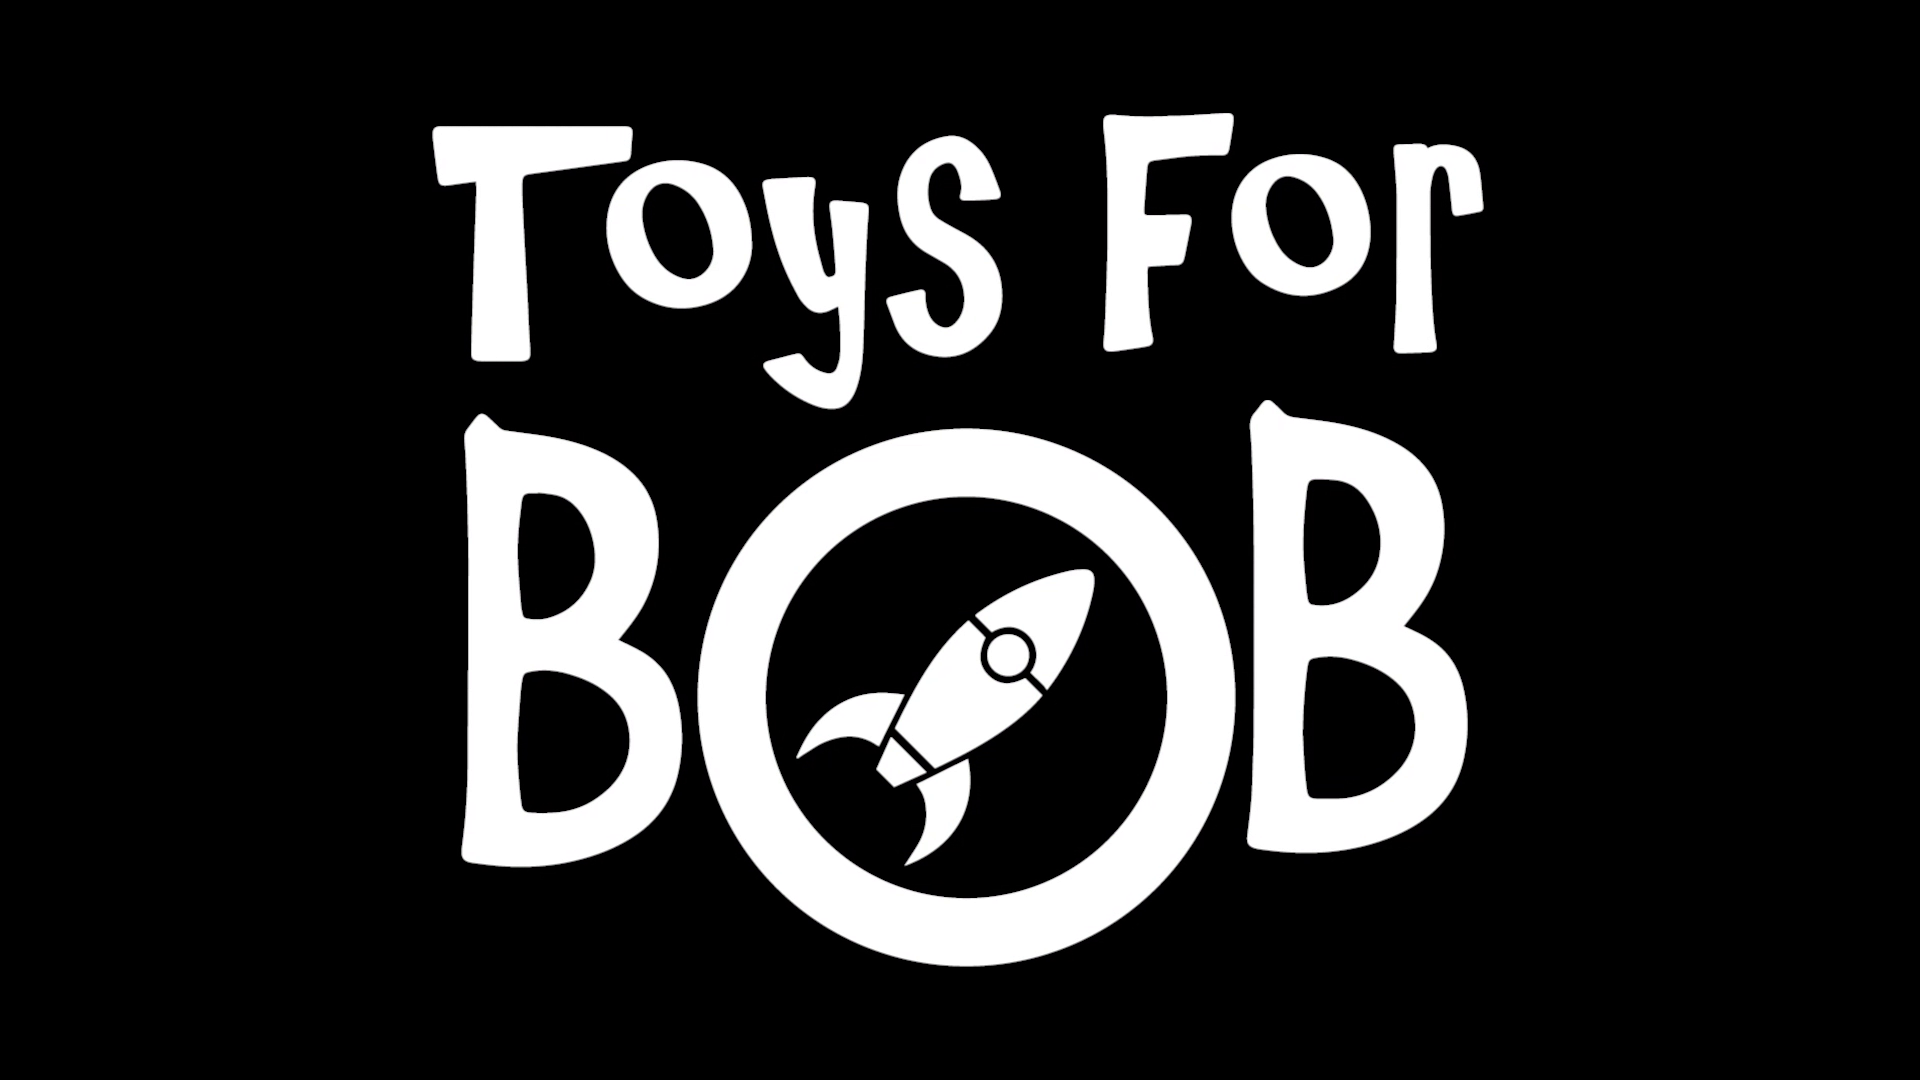 Com demissões, estúdio físico da Toys for Bob é fechado e futuro da empresa é incerto